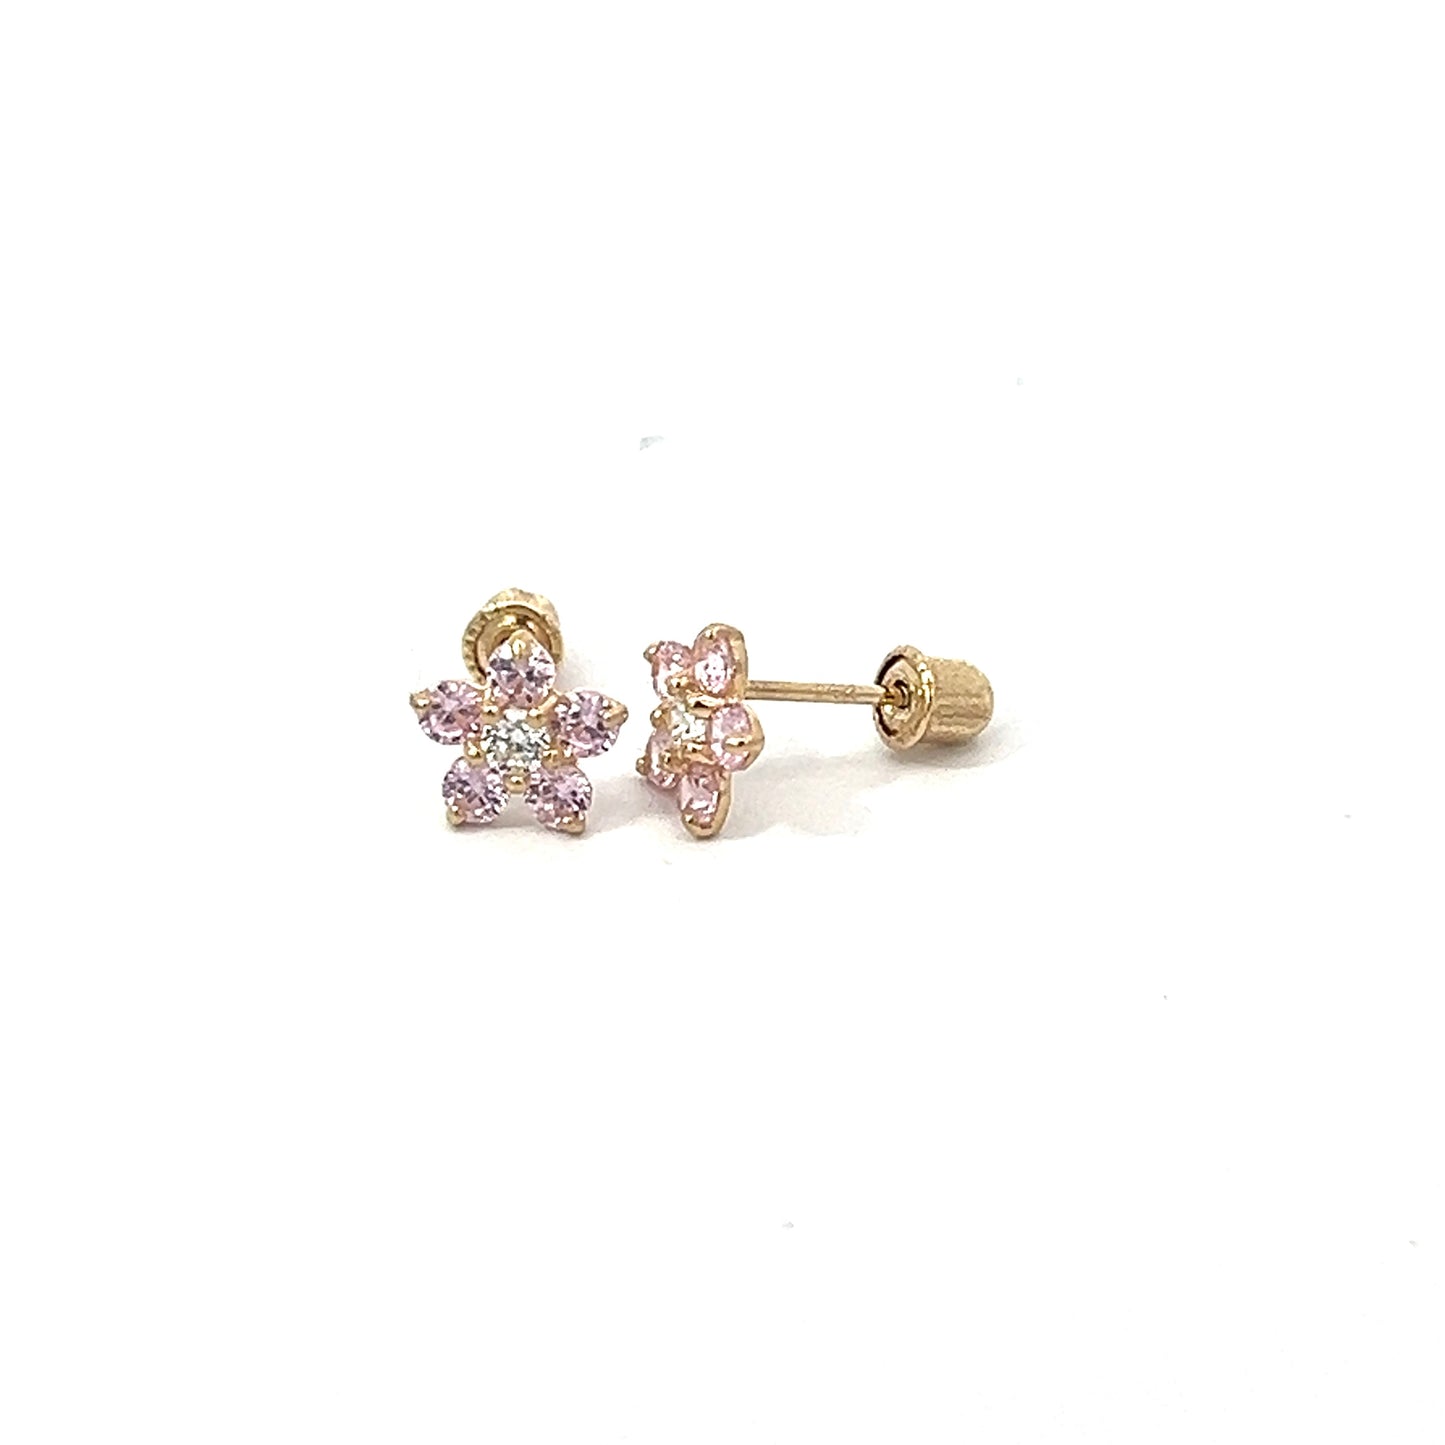 5 petal crystal & 14k gold screwback earrings.